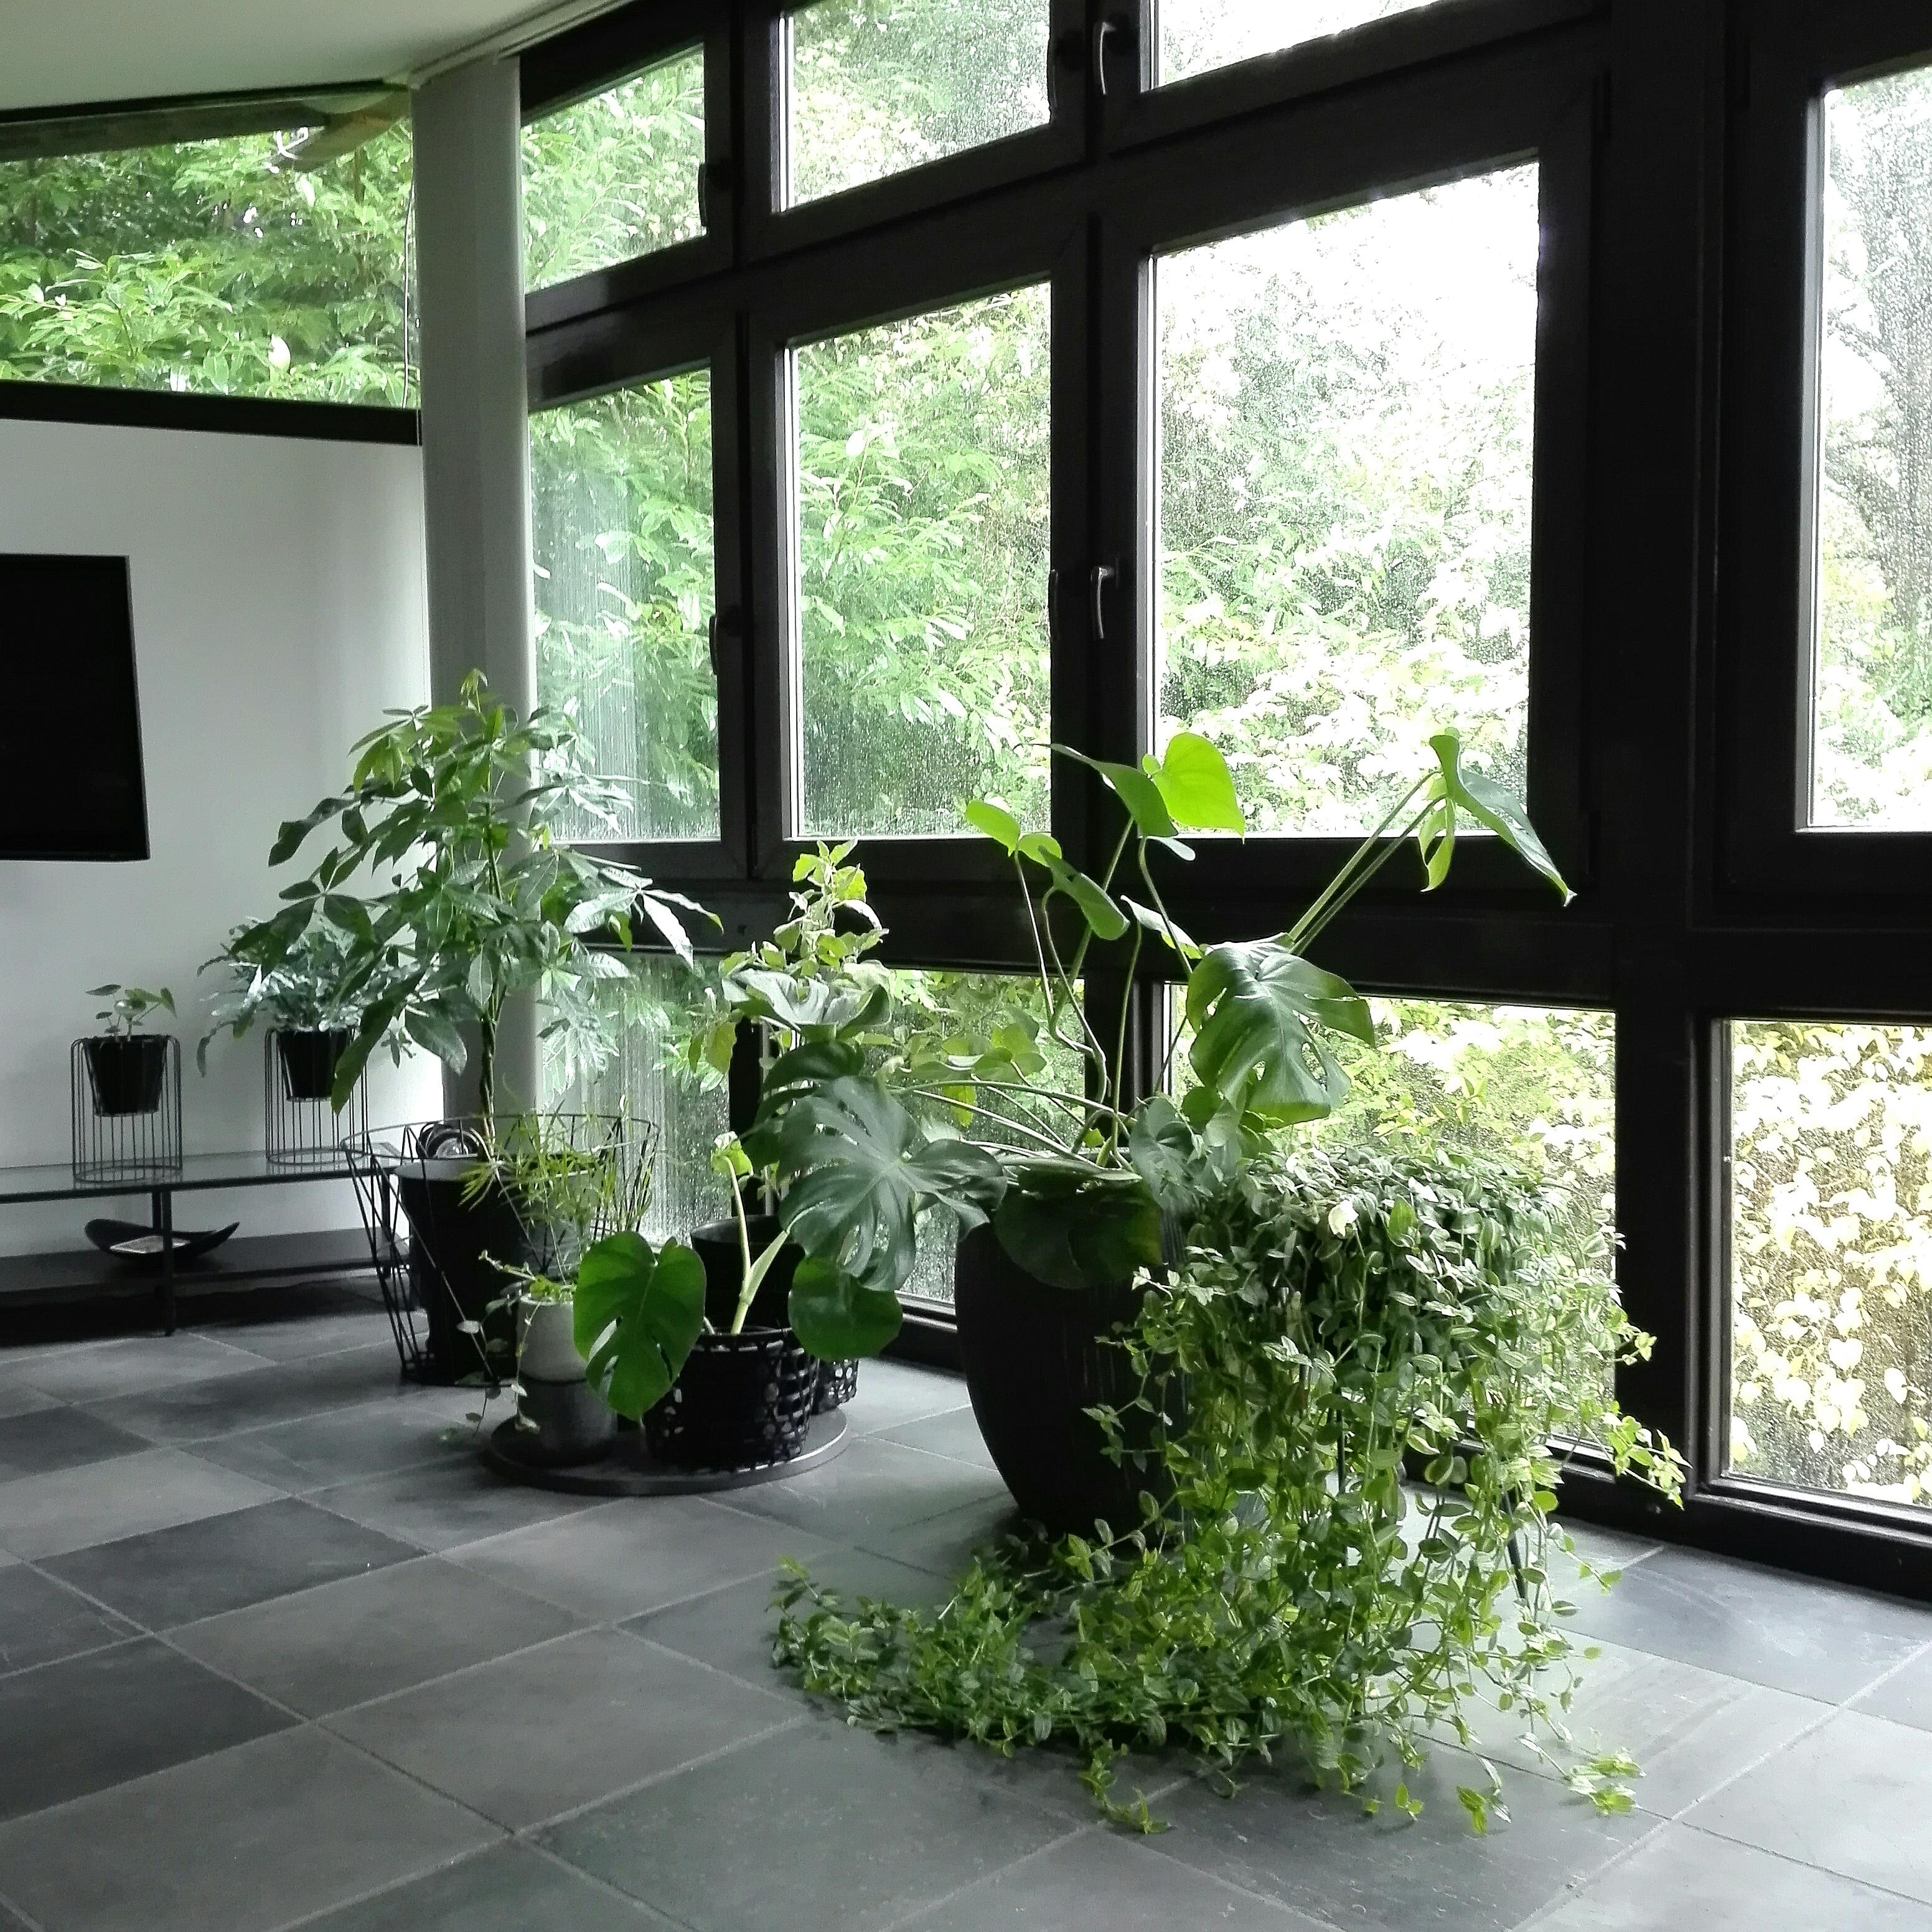 #rainydays #urbanjungle #wohnzimmer #minimalismus #blausteinboden #deco #zimmerpflanzen